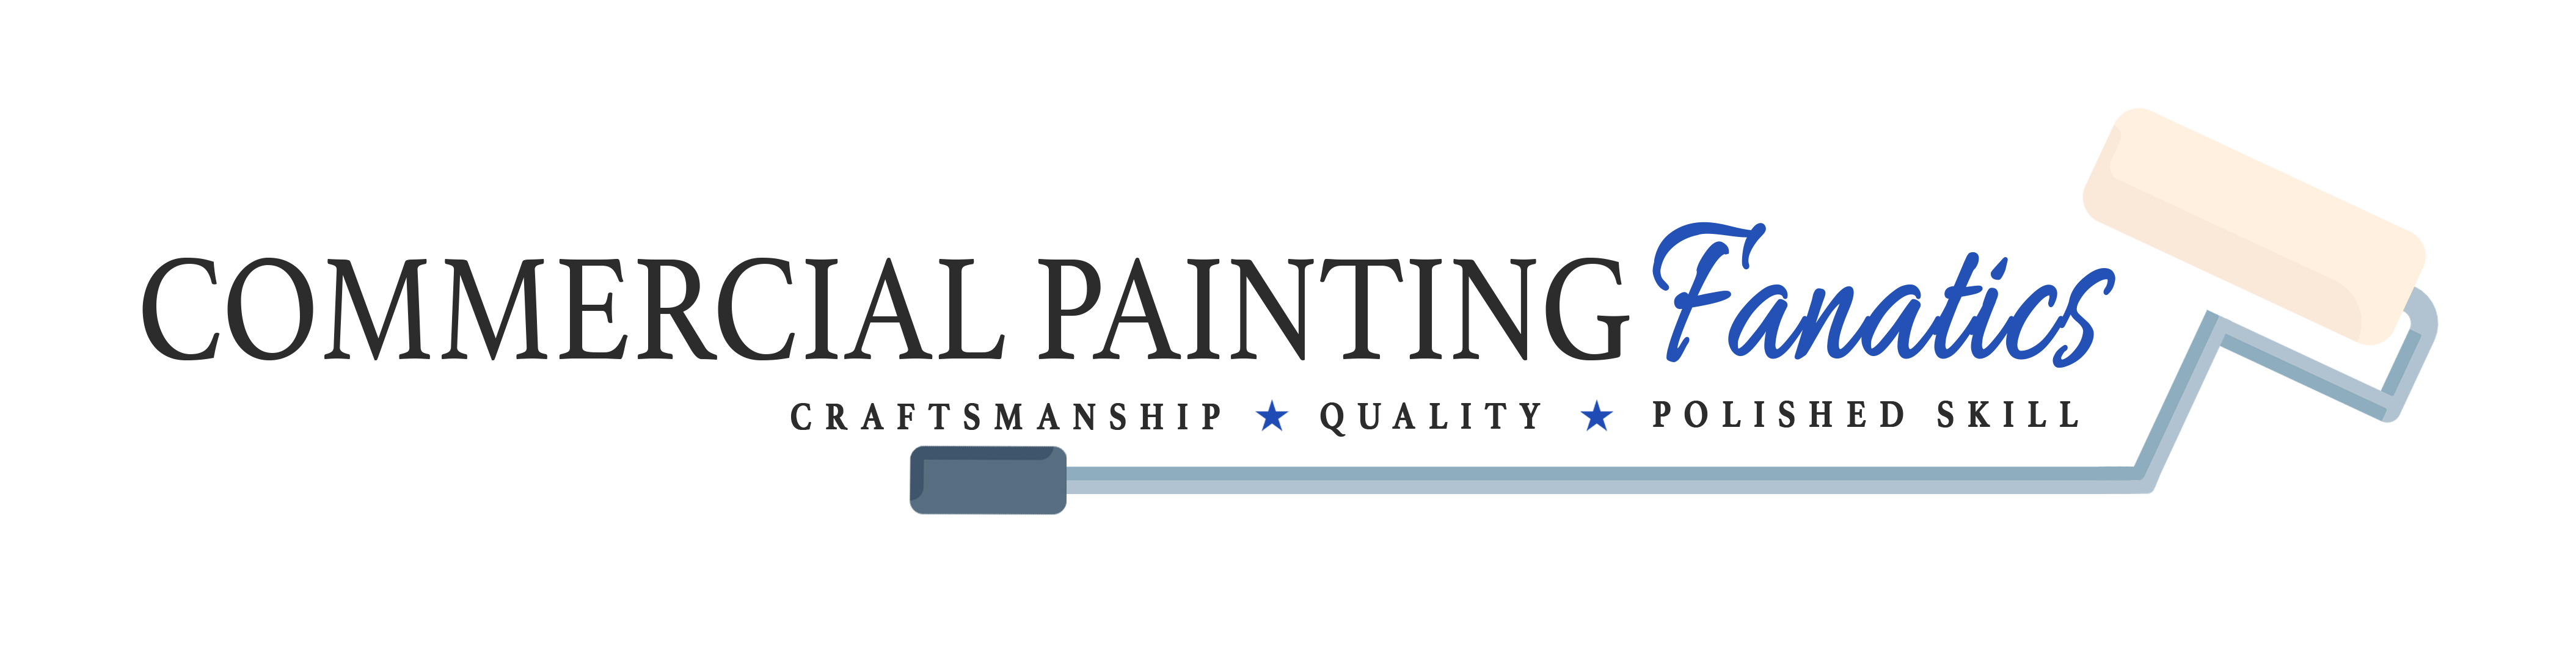 Commercial Painters St. Louis Missouri